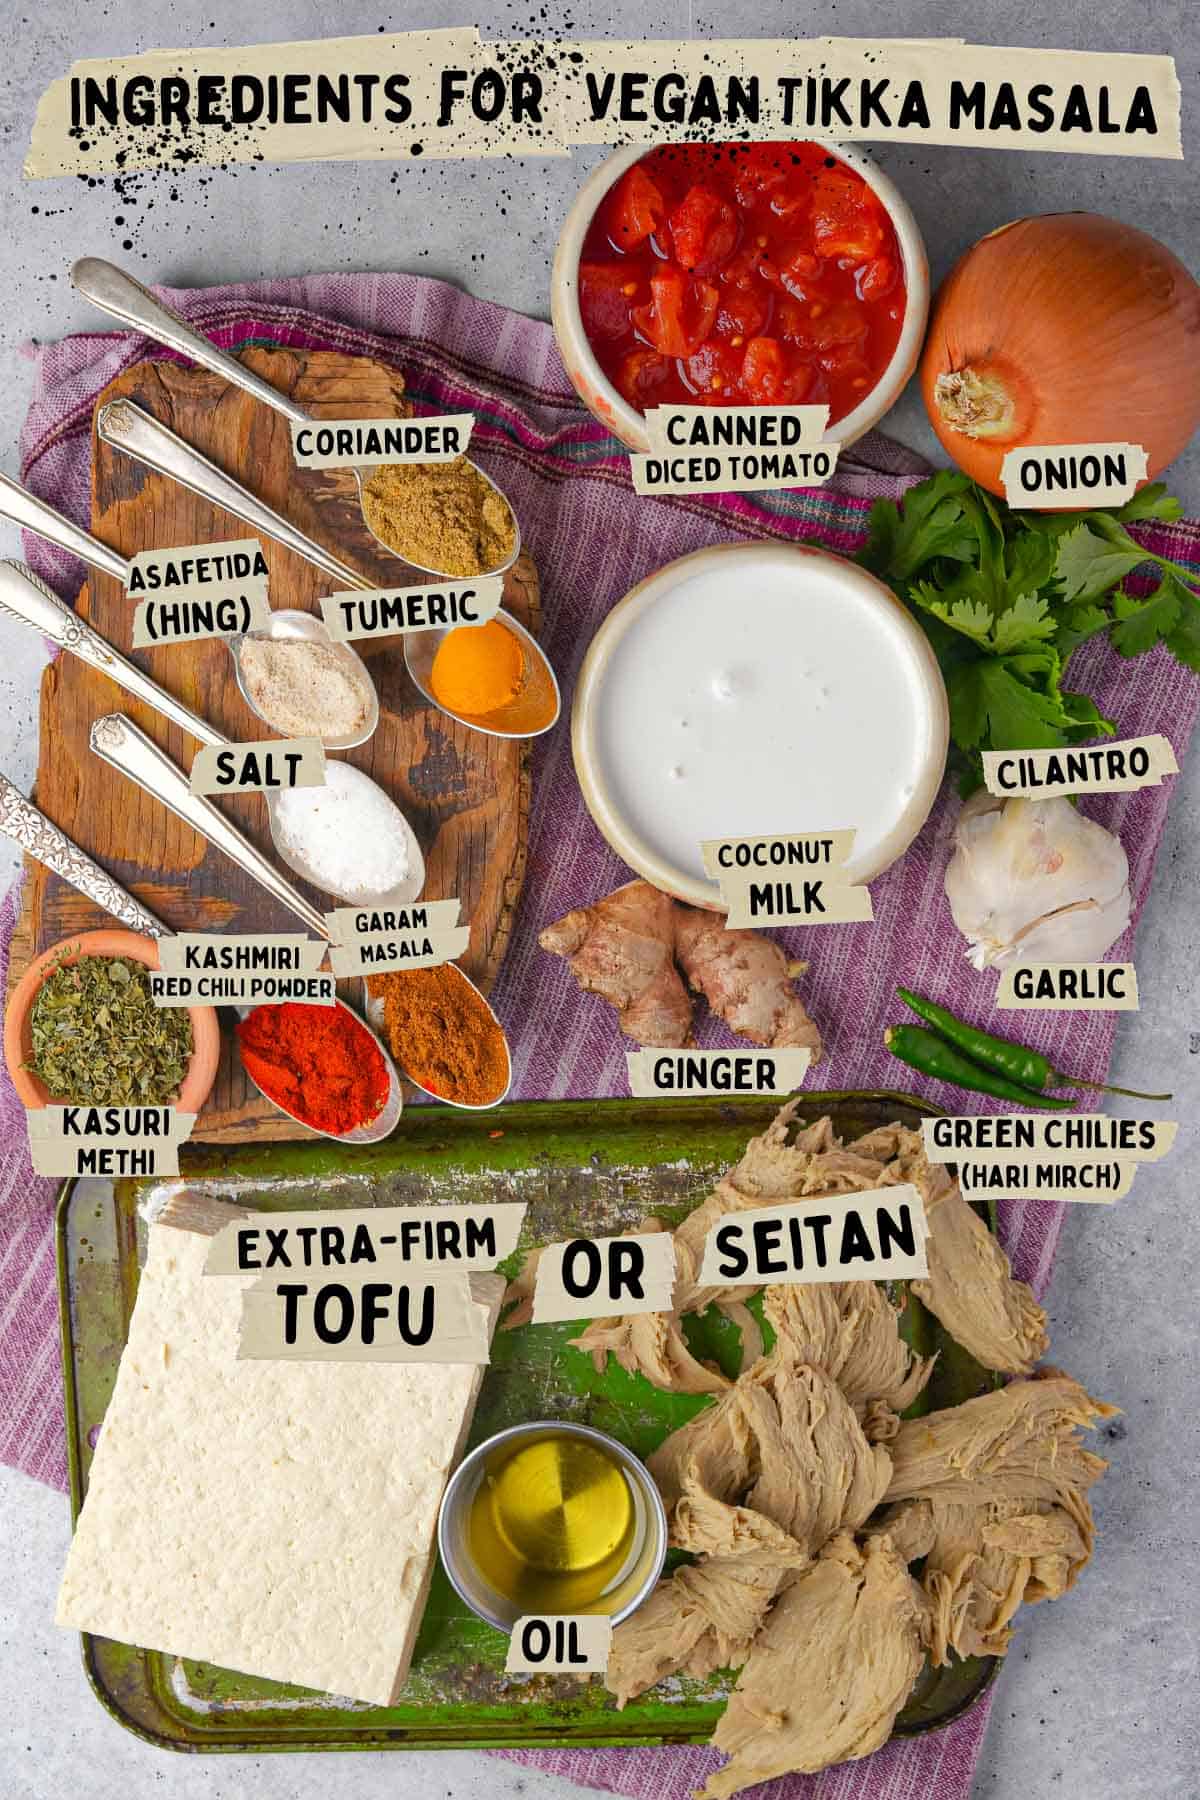 Ingredients for vegan tikka masala.